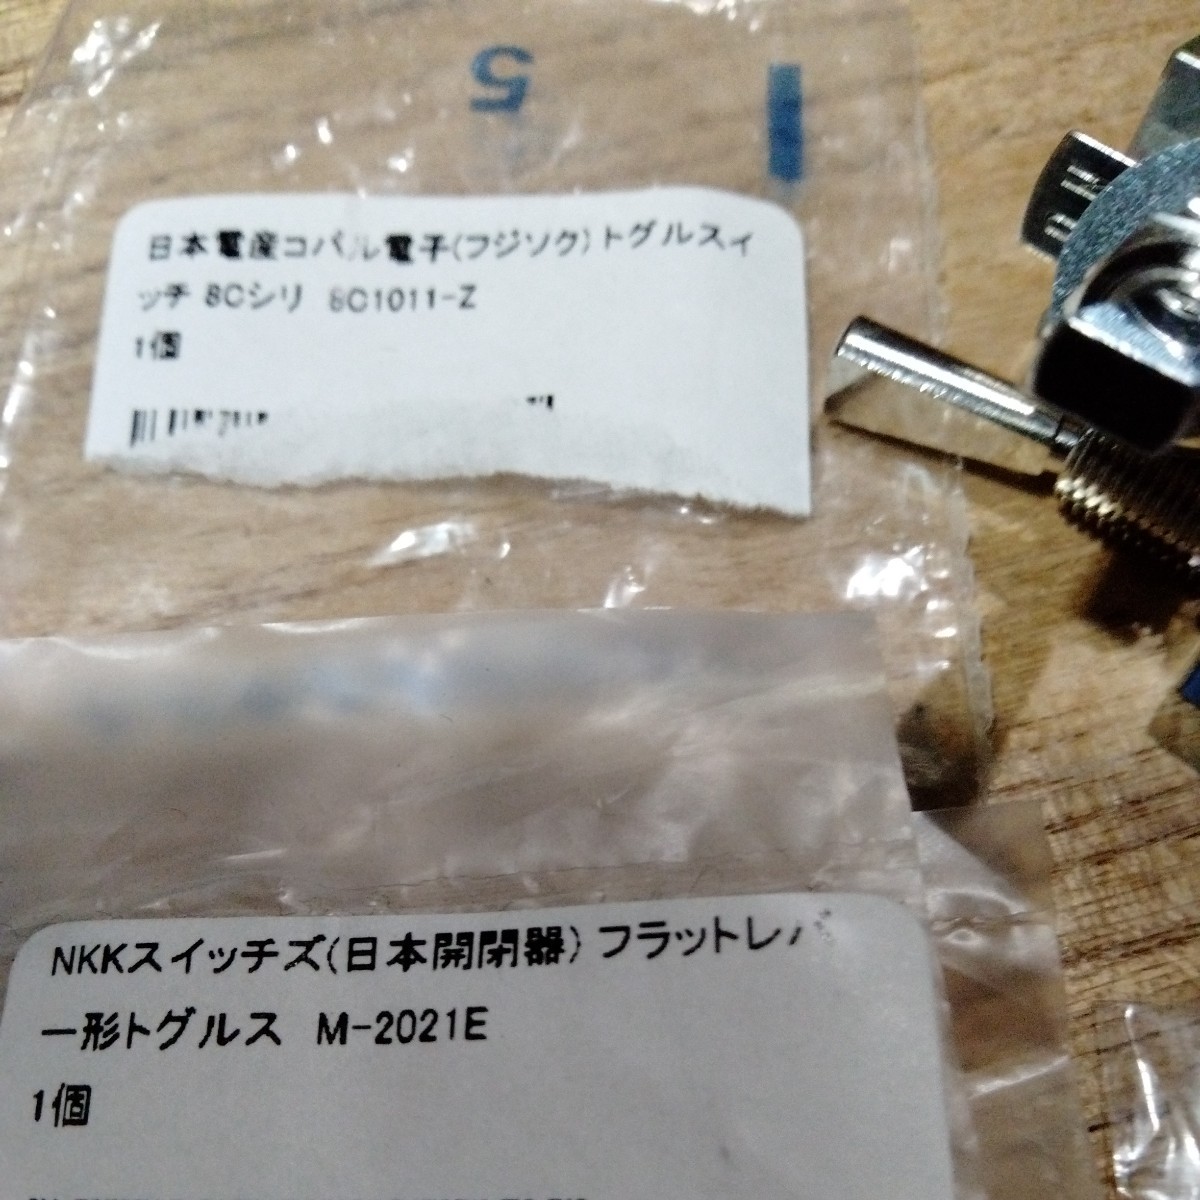 新品 未使用 NKKスイッチズ 日本電産 コパル電子 フジソク トグルスイッチ 8c フラットレバー M-2021E 電子部品 LED 8c1011-z_画像4